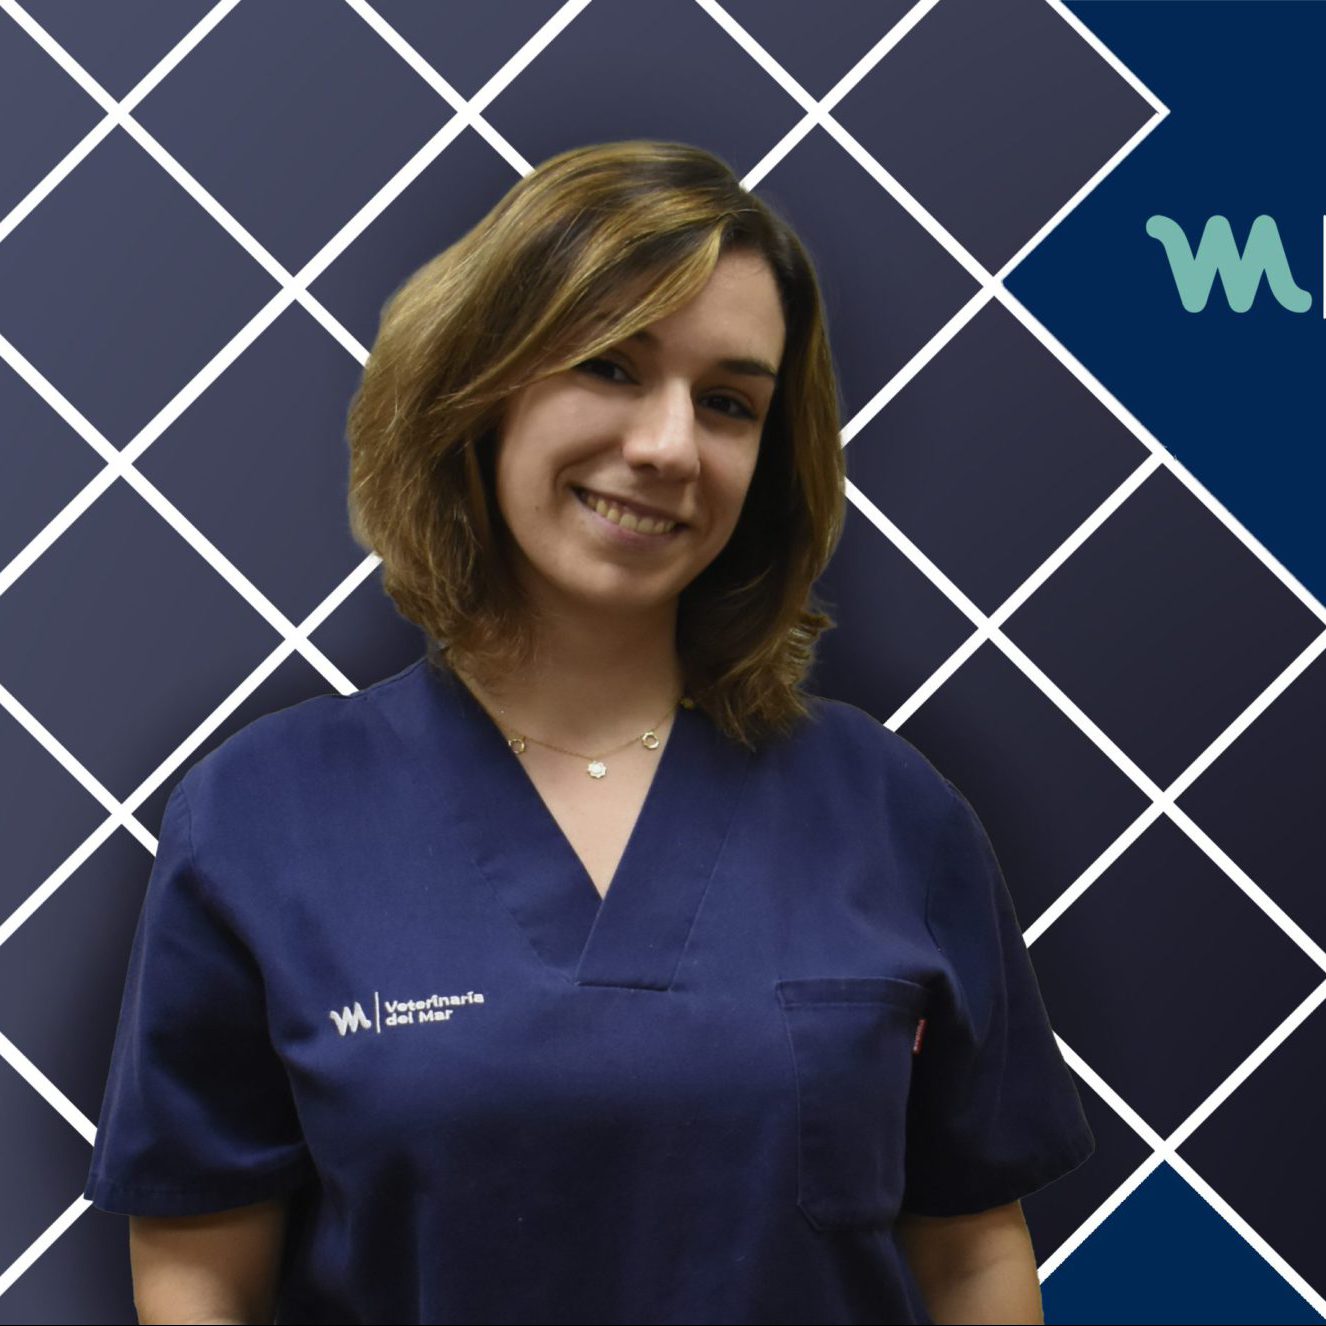 Veterinary Surgery | Elvira Deffontis | Hospital Veterinario del Mar